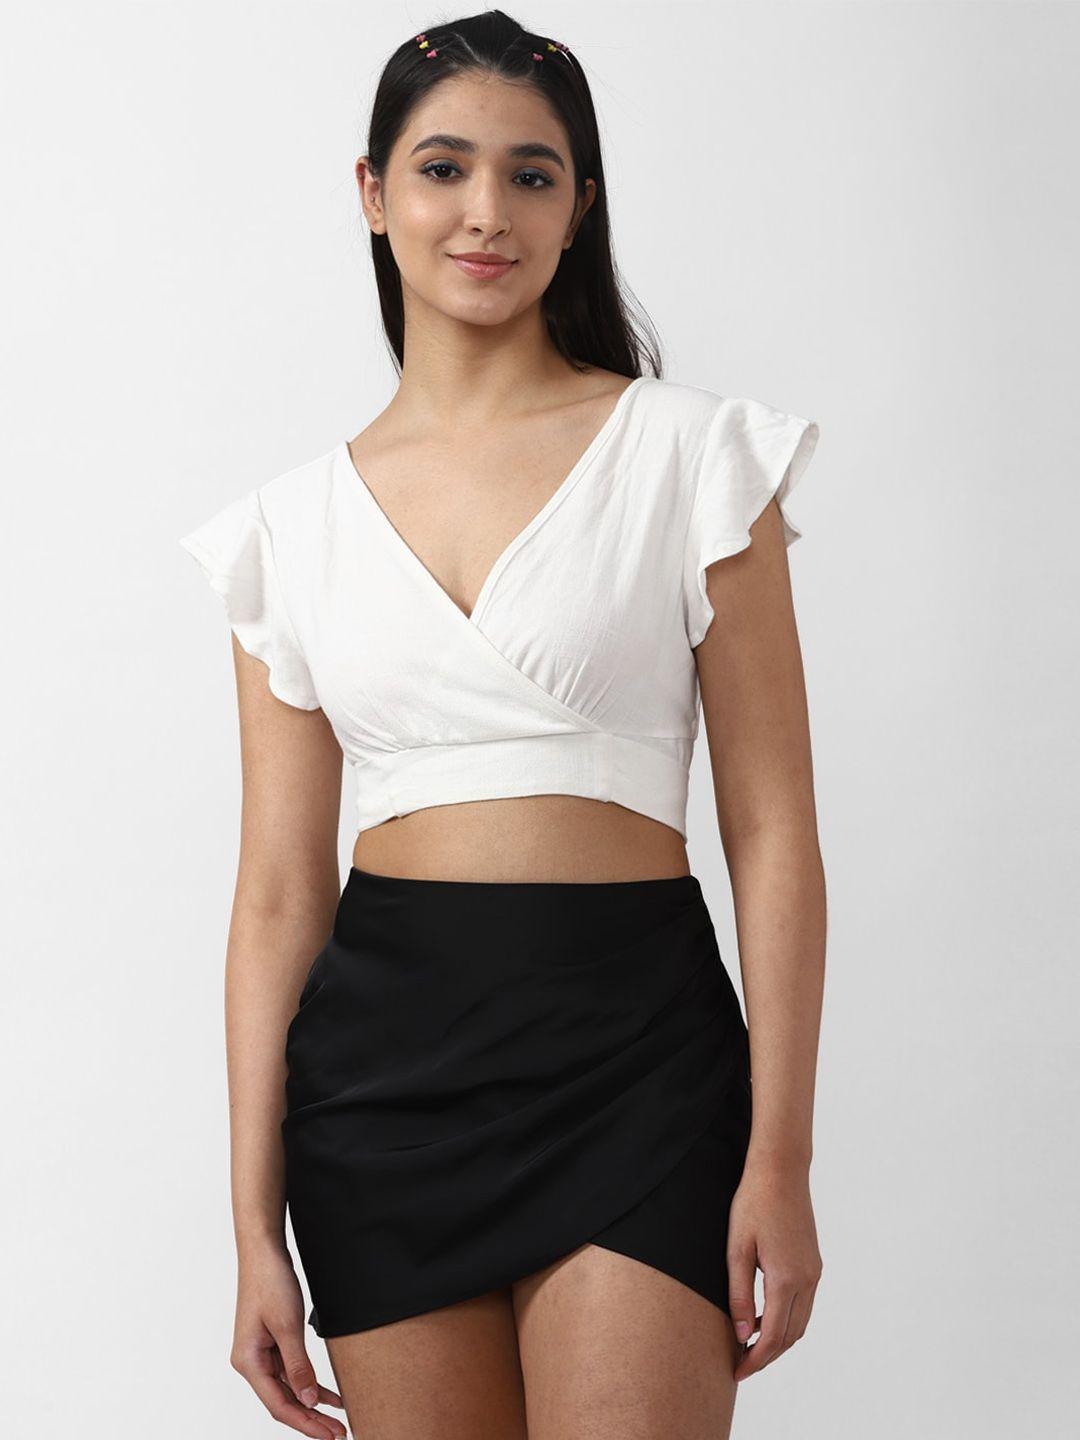 forever-21-women-white-&-black-top-with-skirt